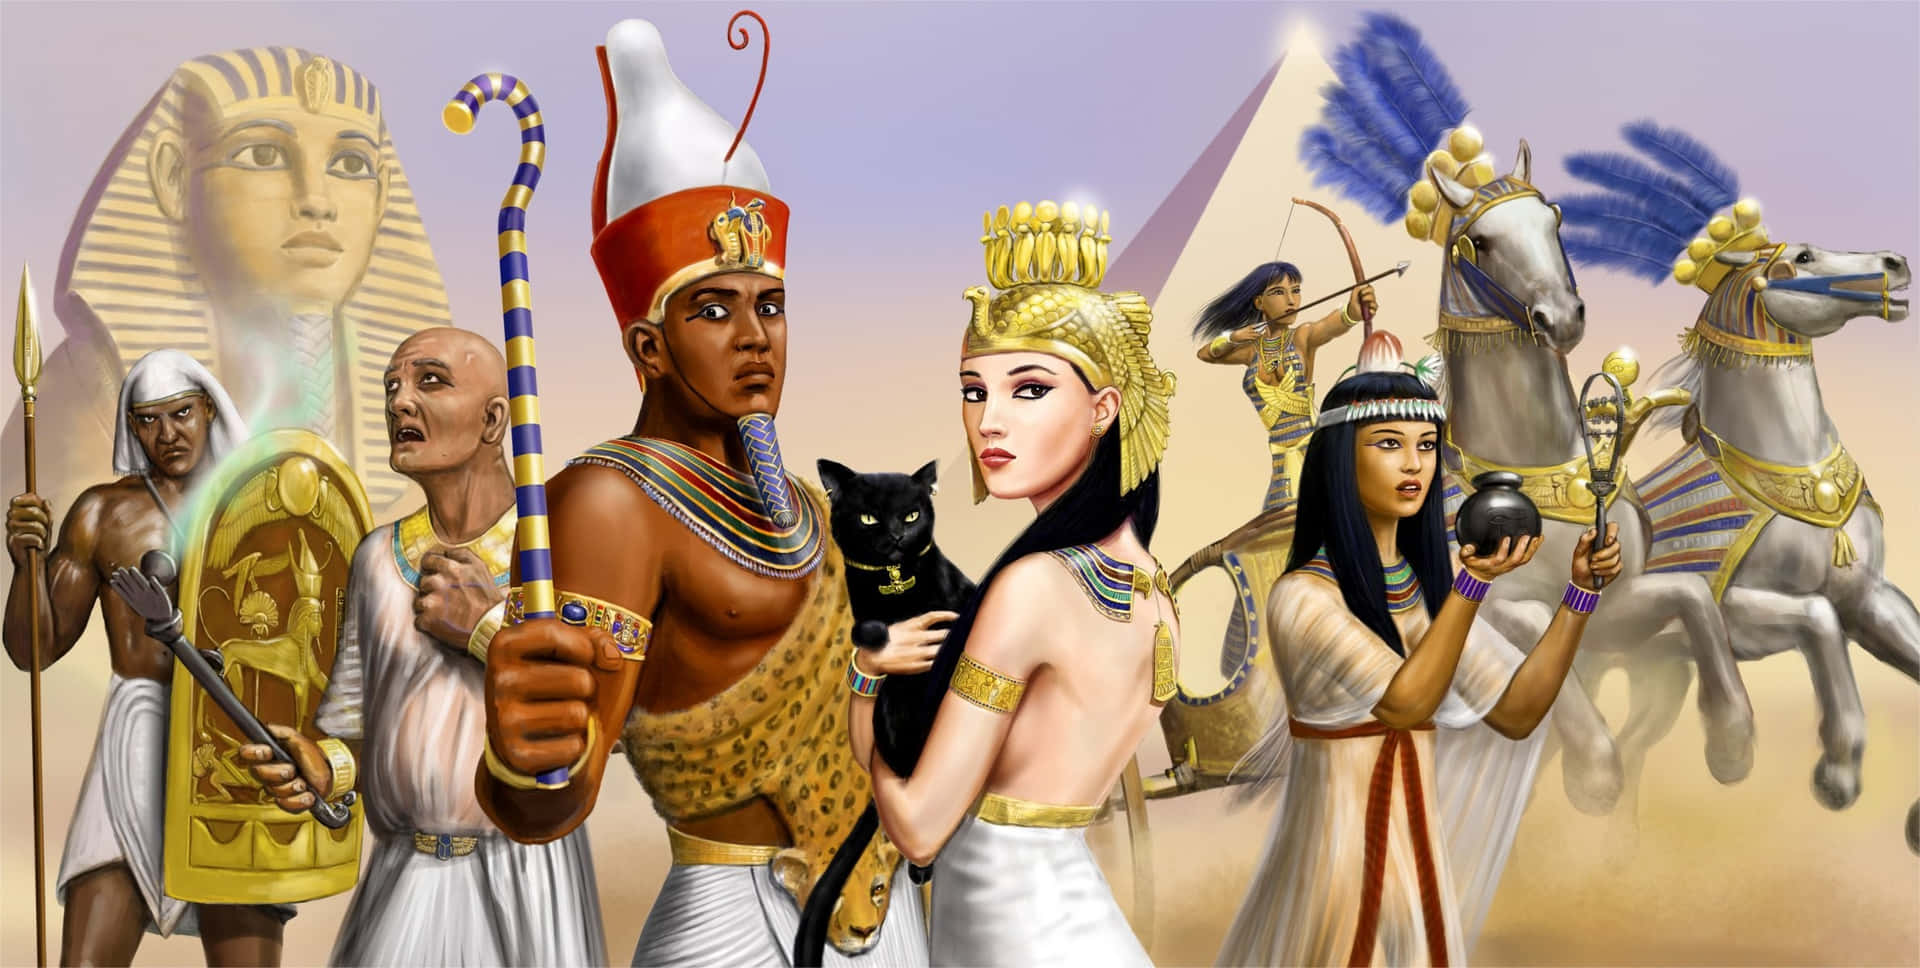 Egyptiskkattfarao Och Pyramider På Bild.